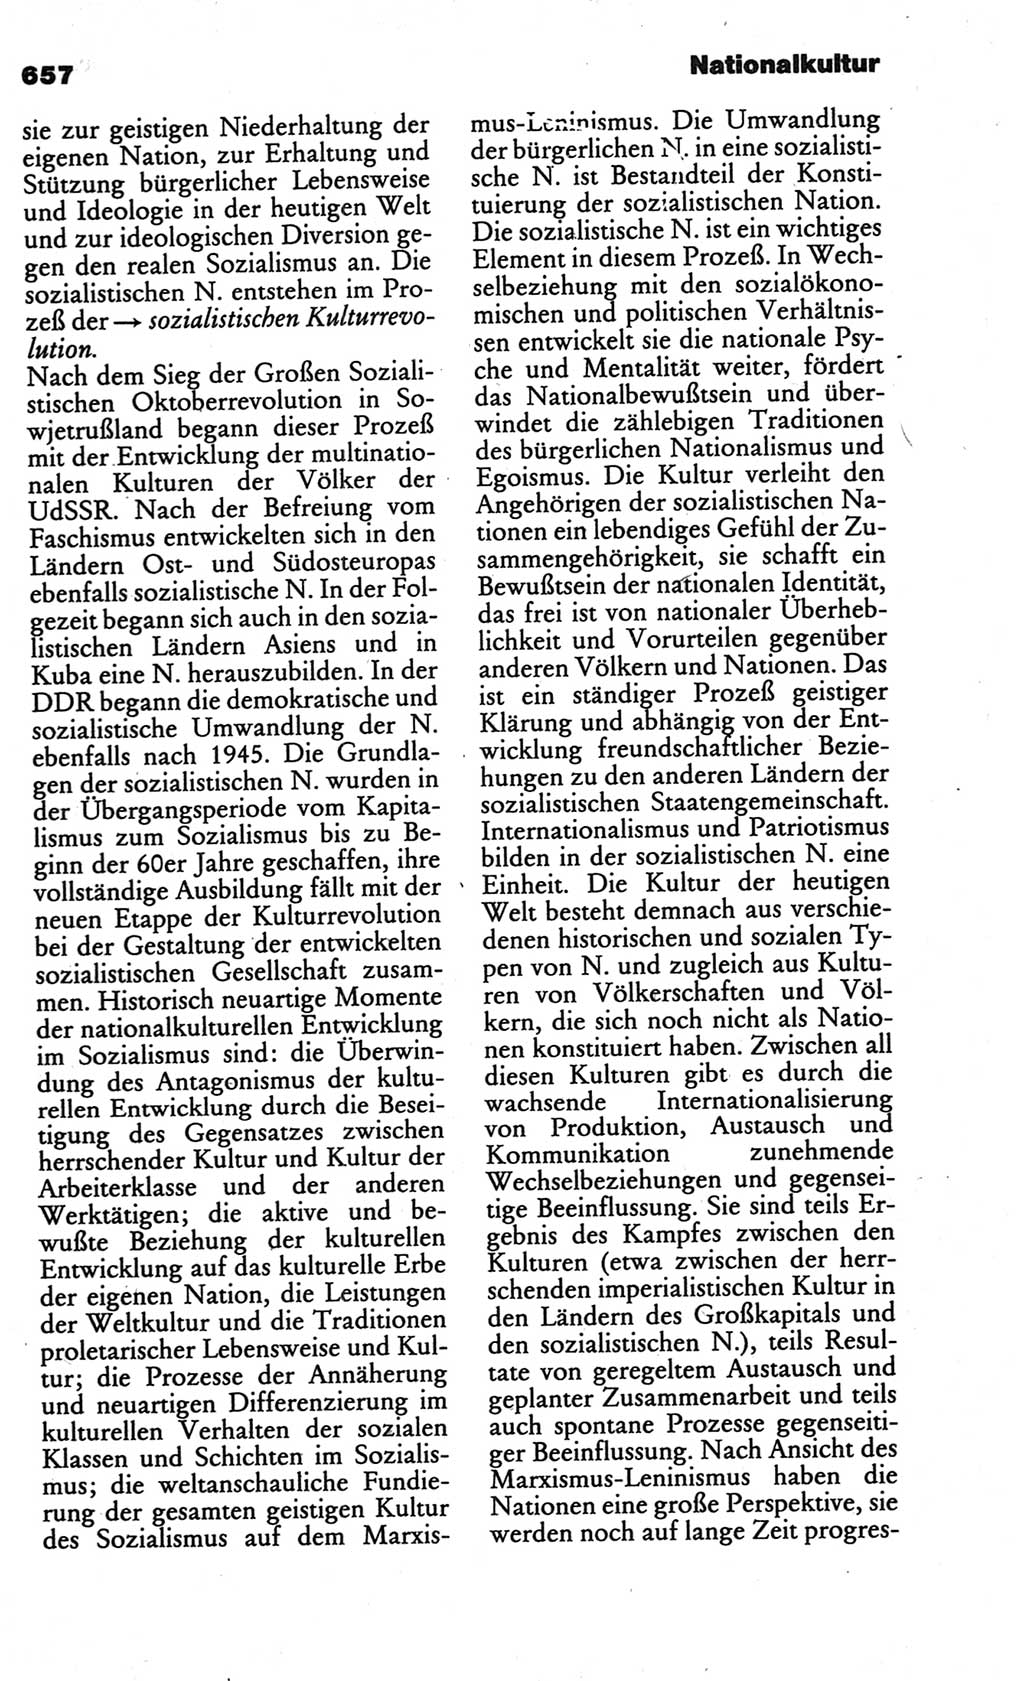 Kleines politisches Wörterbuch [Deutsche Demokratische Republik (DDR)] 1986, Seite 657 (Kl. pol. Wb. DDR 1986, S. 657)